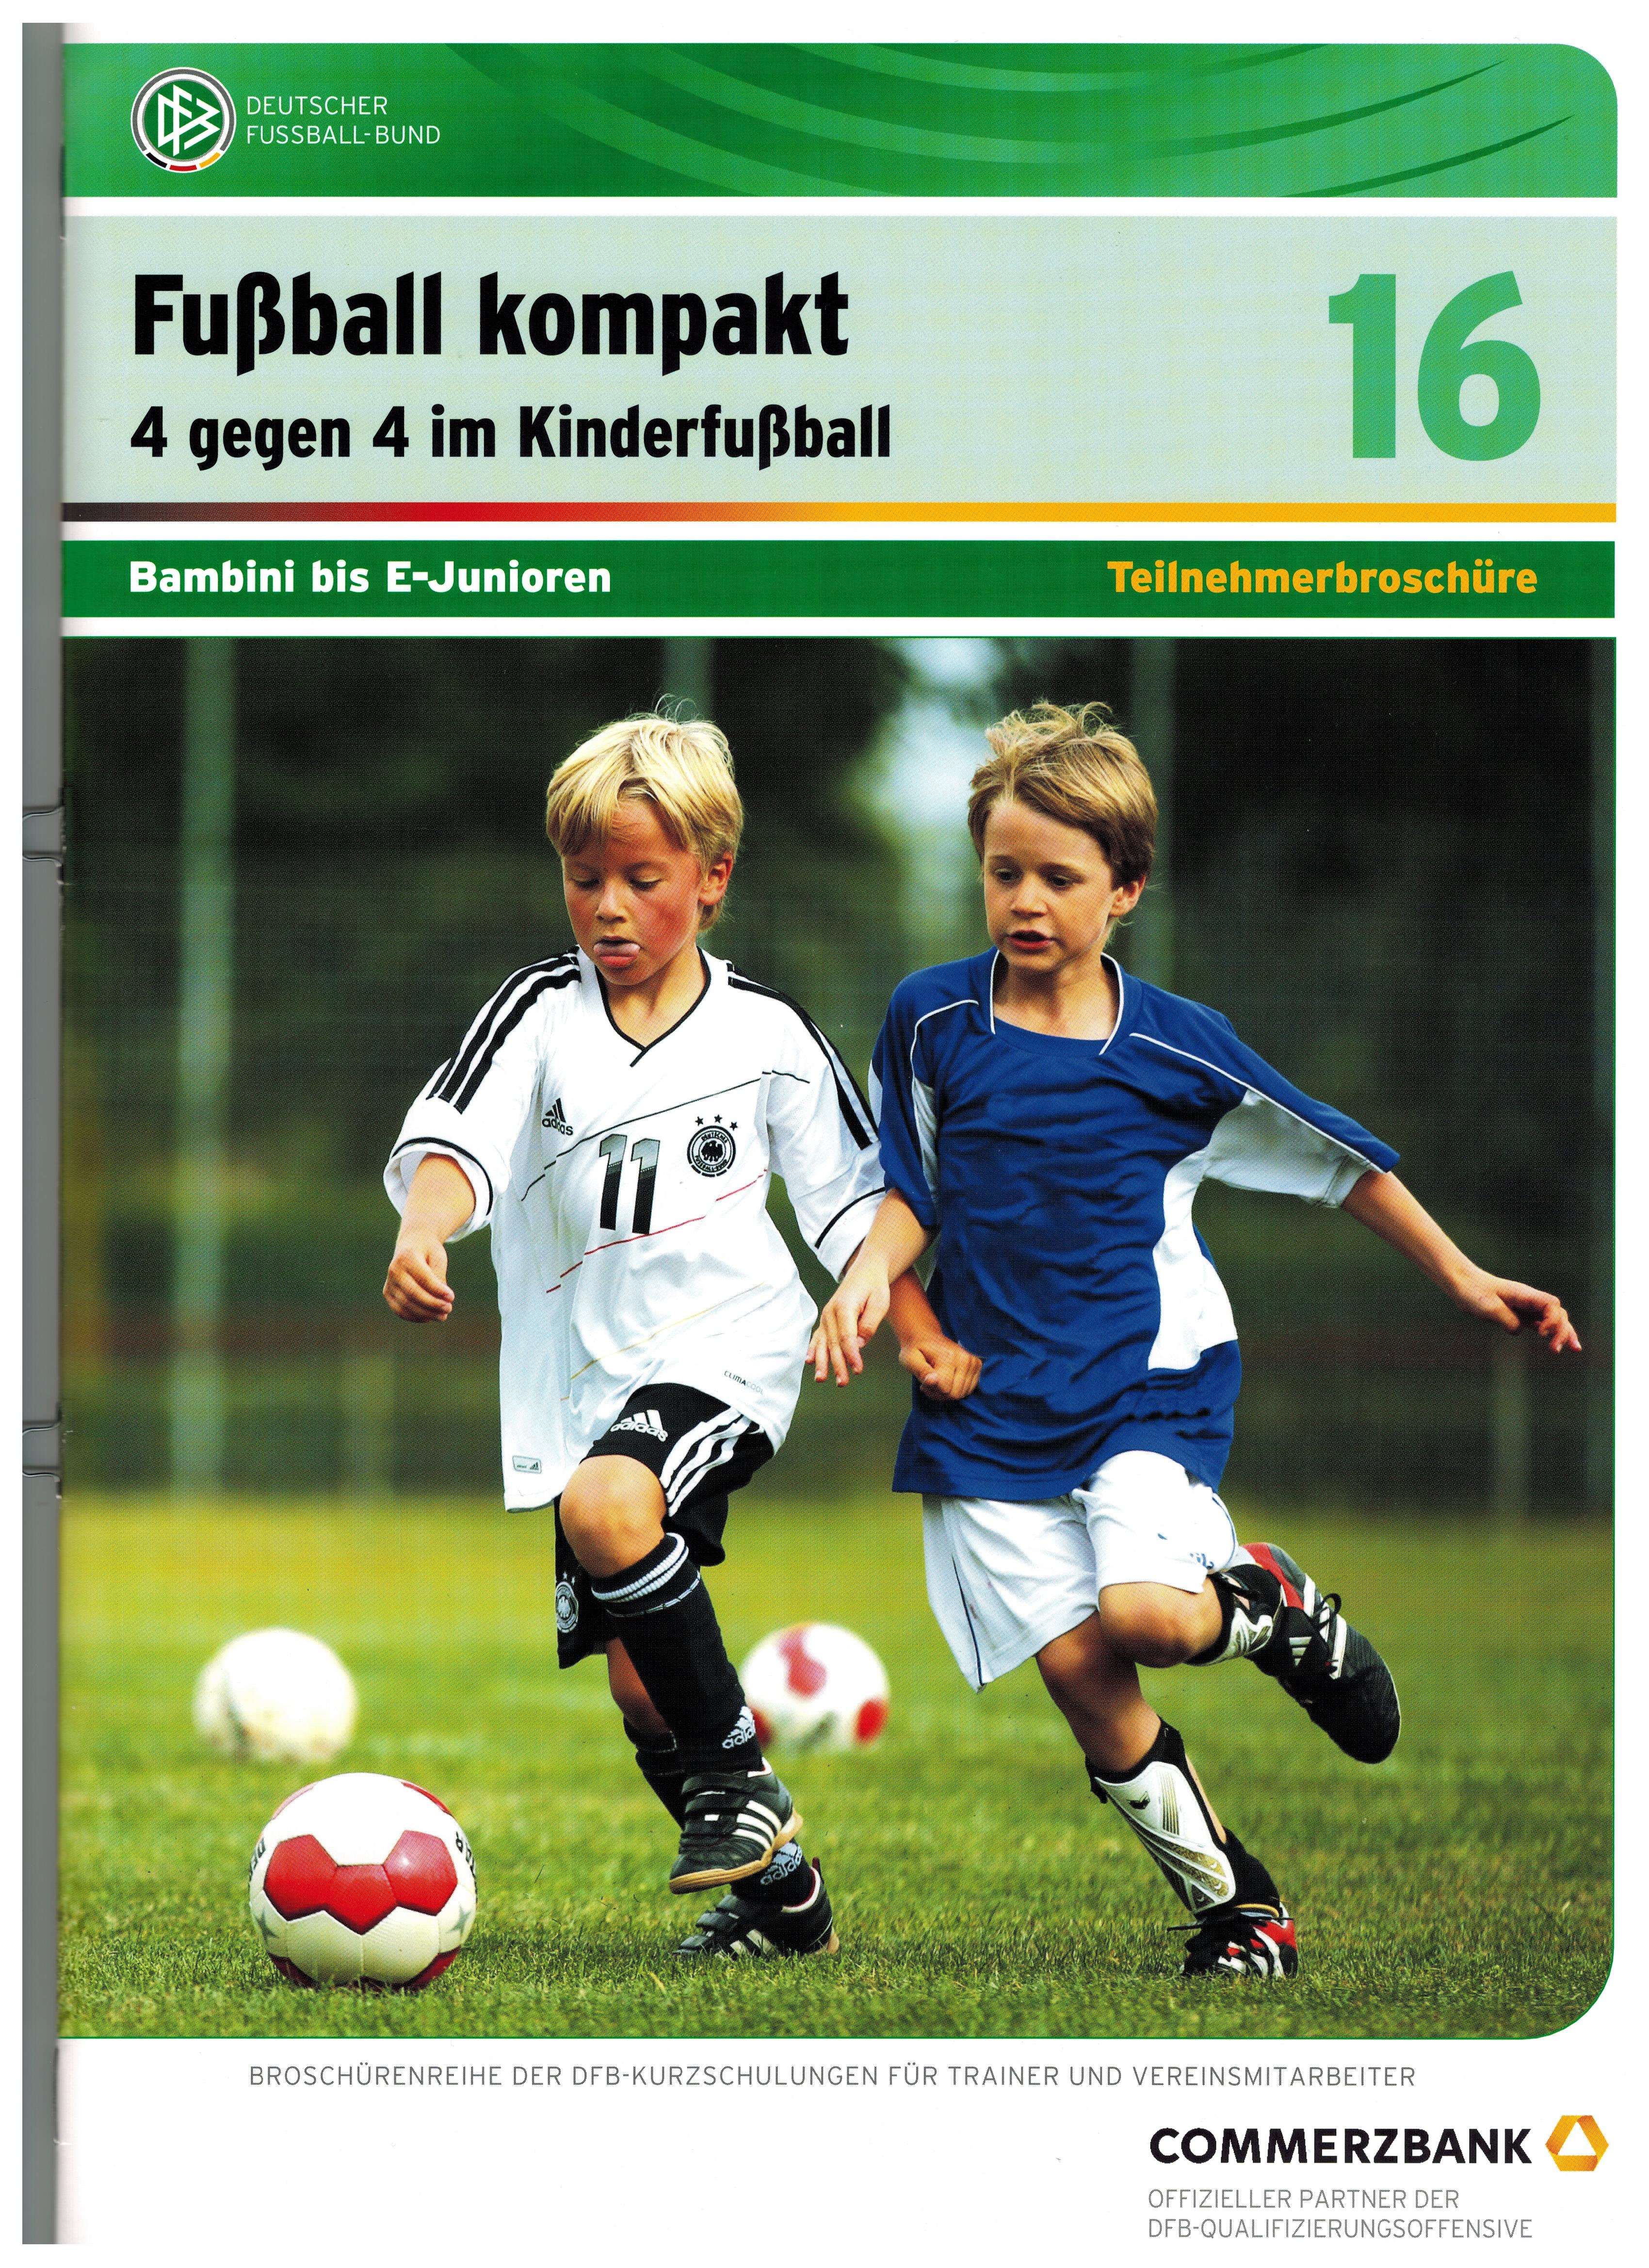 особенности немецкого детского футбола и упражнения 4 на 4